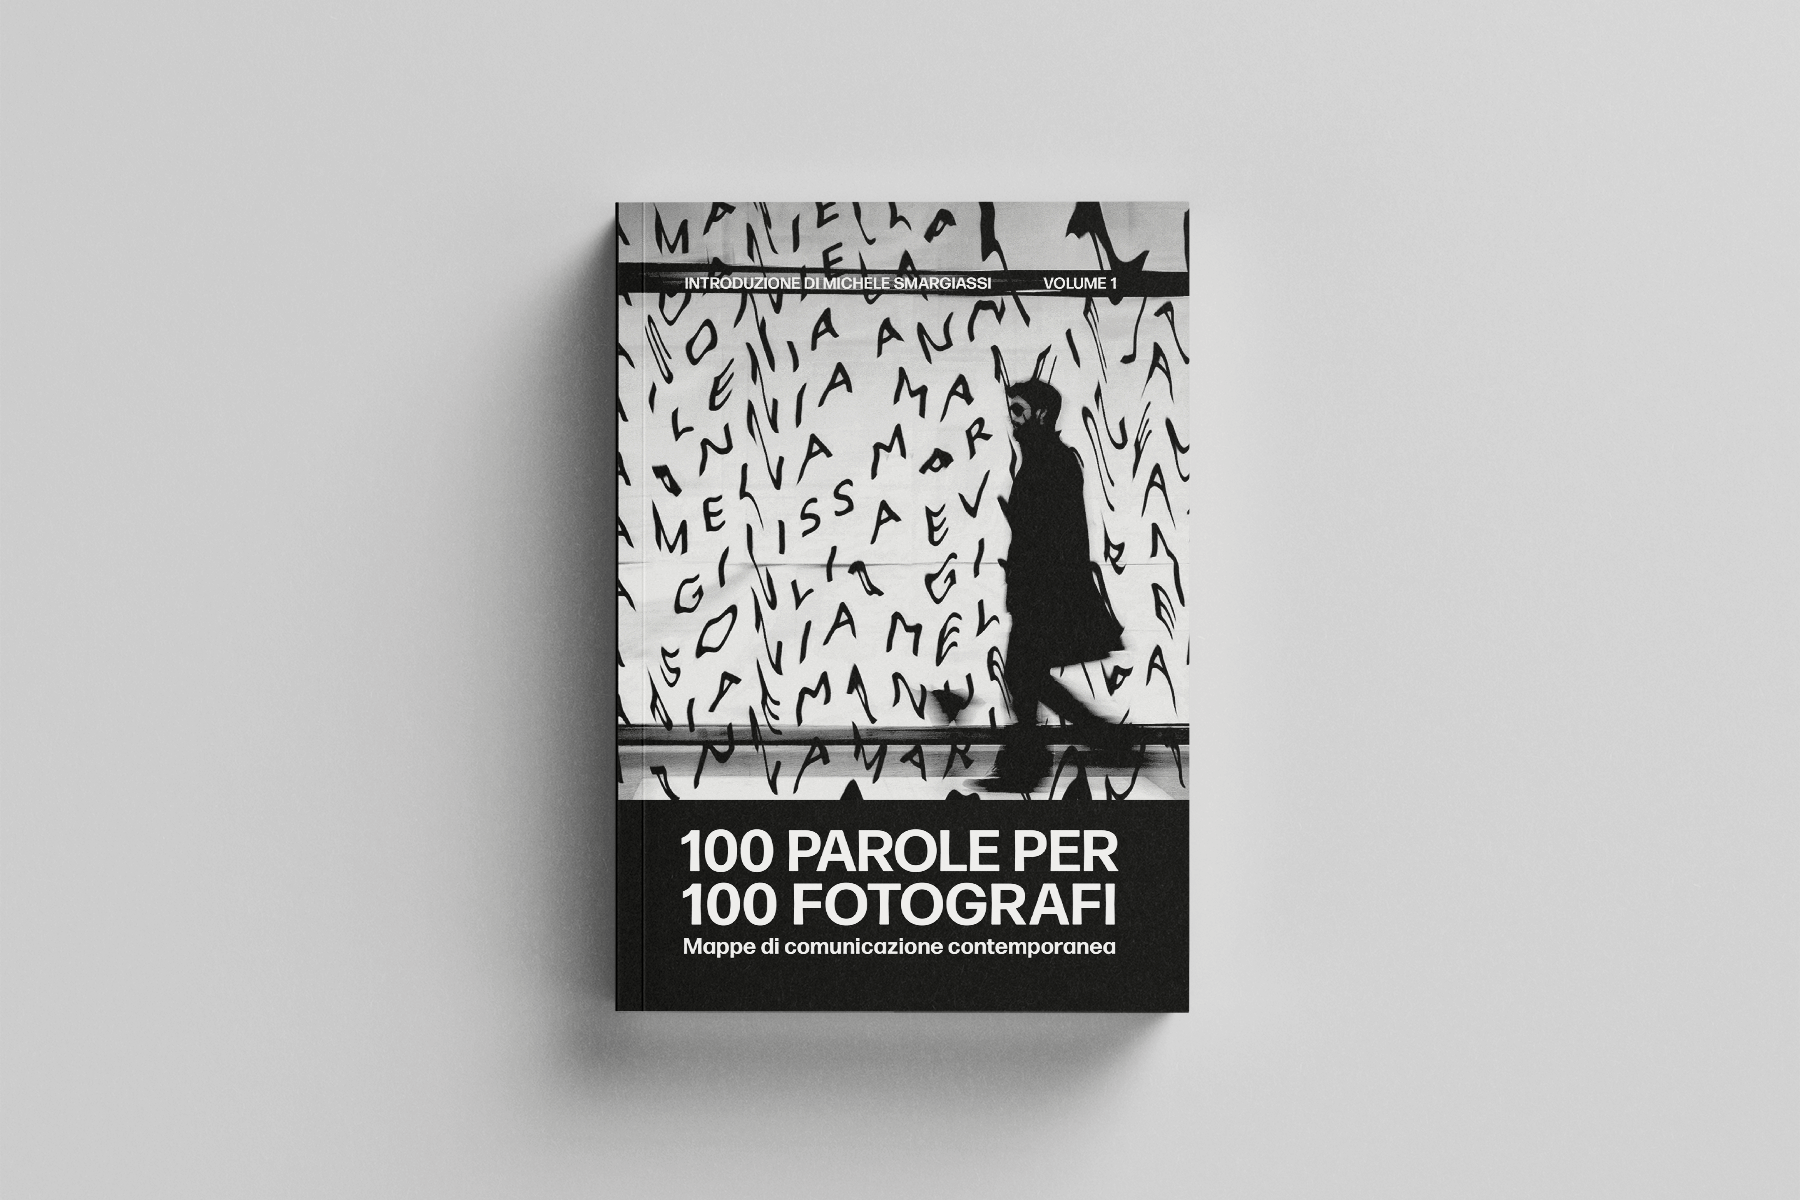 100 parole per 100 fotografi: copertina del volume 1